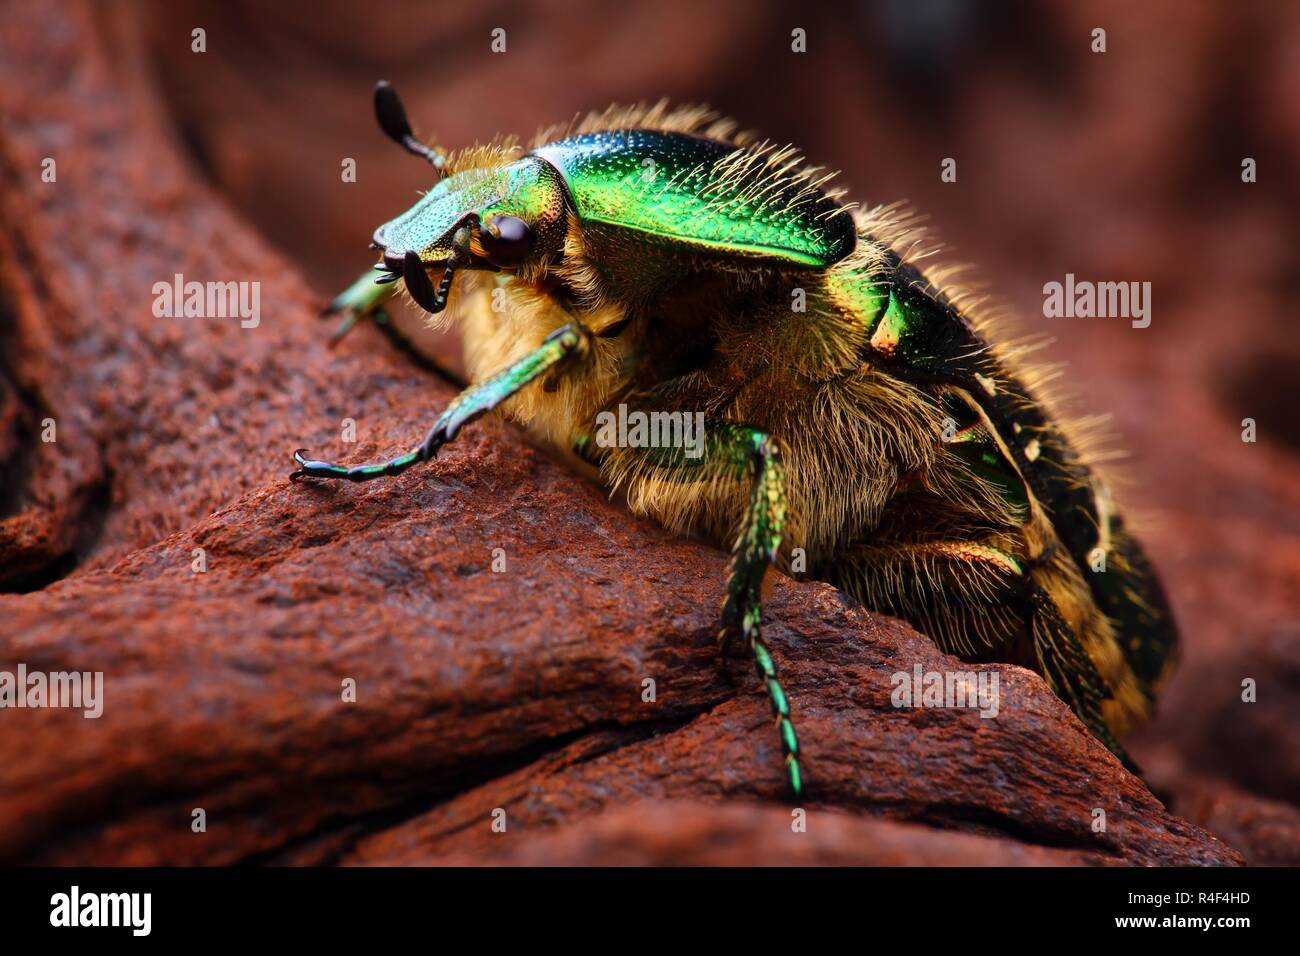 Extrem scharfe und detaillierte Foto von Skarabäus Insektennadeln (Cetonia aurata) Käfer. Das Bild wird von vielen Schüsse, die in einem scharfen Bild gestapelt. Stockfoto